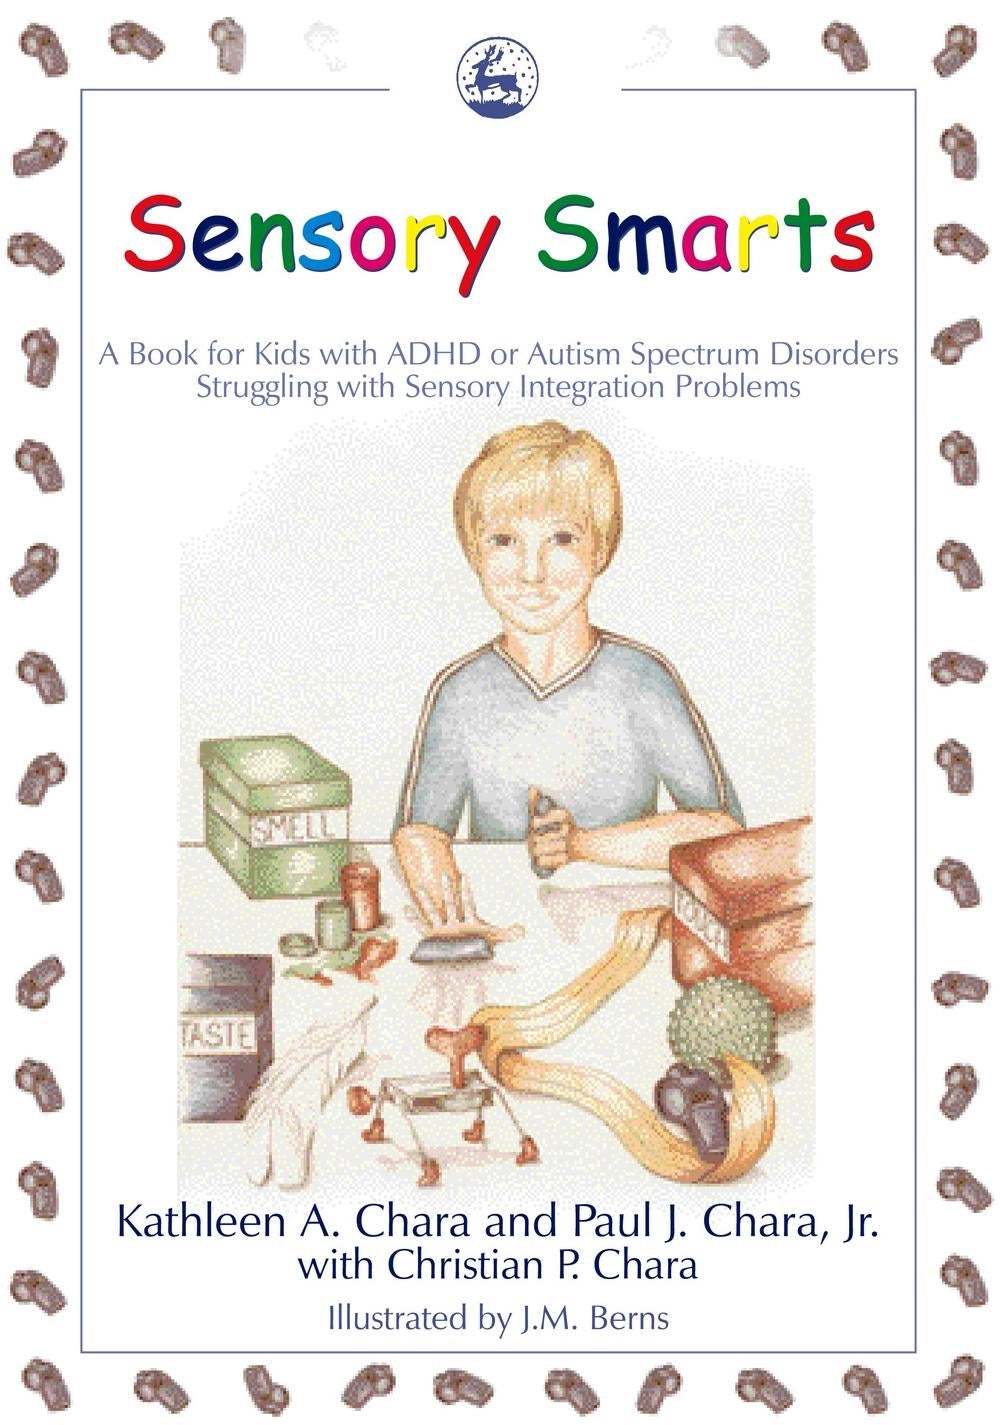 Sensory Smarts by Kathleen A. Chara, Paul J. Chara